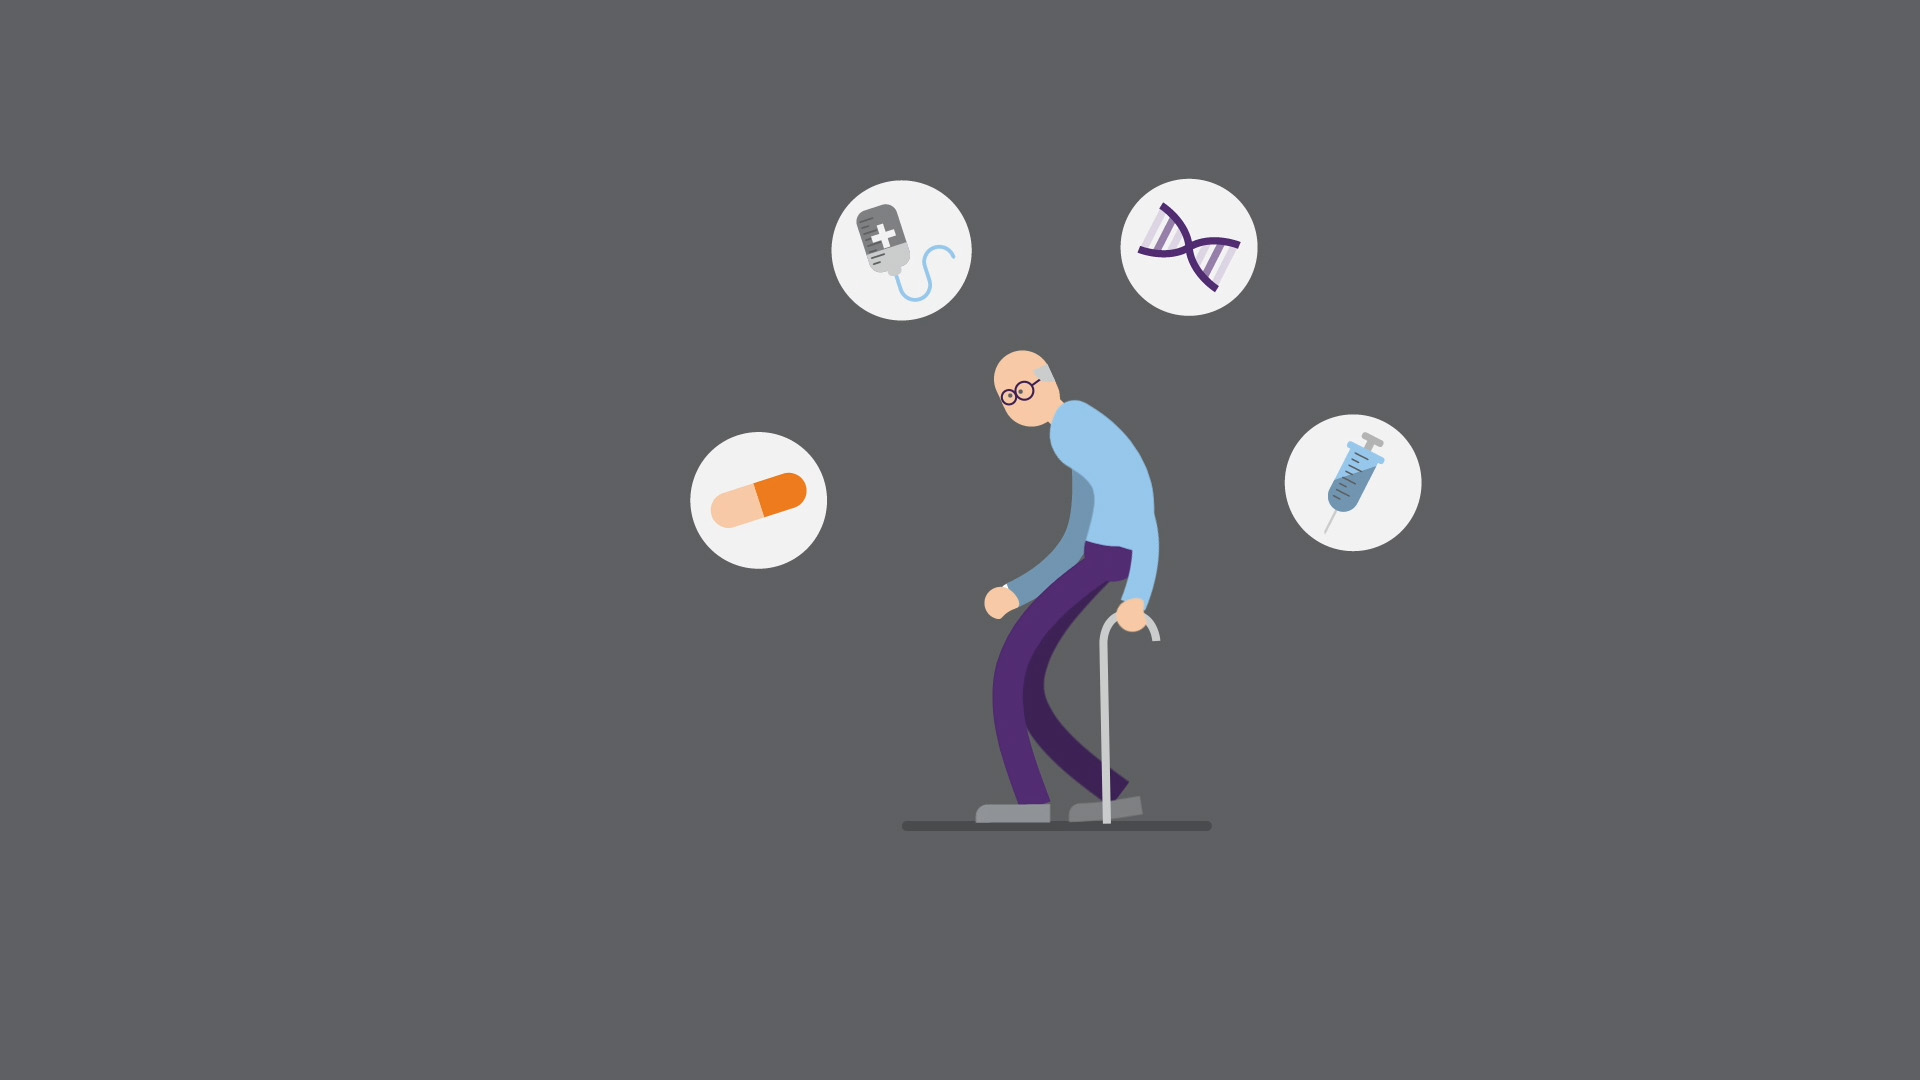 Beeld uit de motion graphic: een man met wandelstok waar illustraties van medicijnen omheen staan